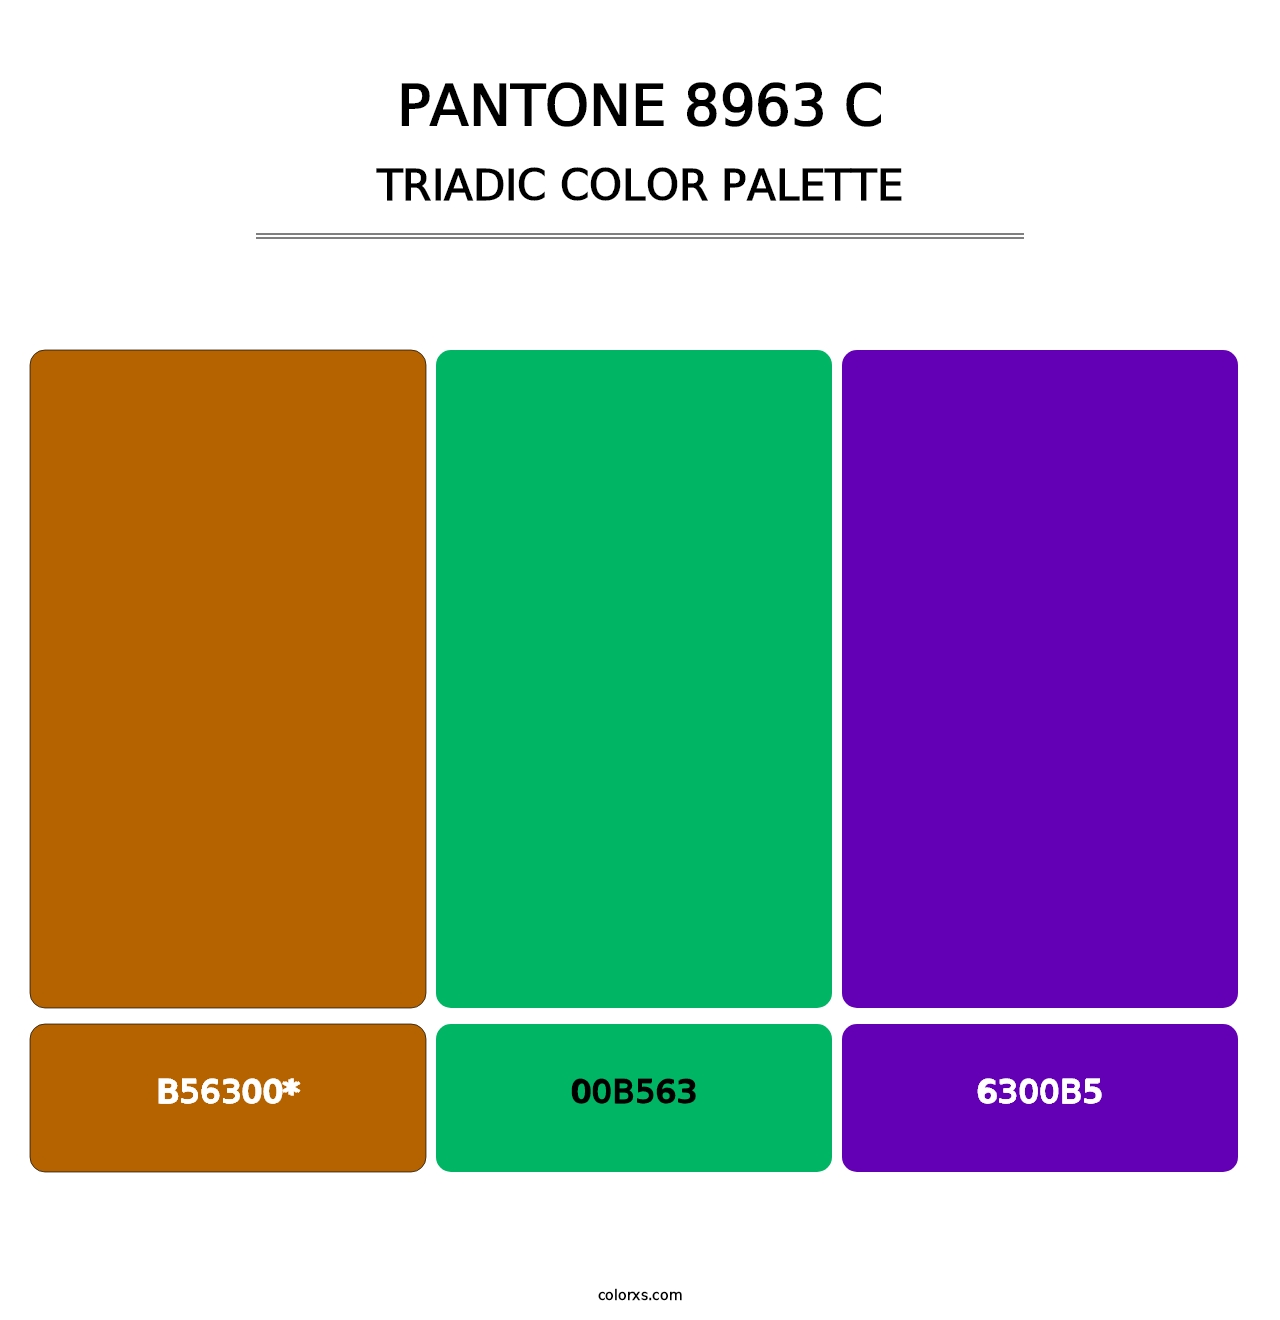 PANTONE 8963 C - Triadic Color Palette